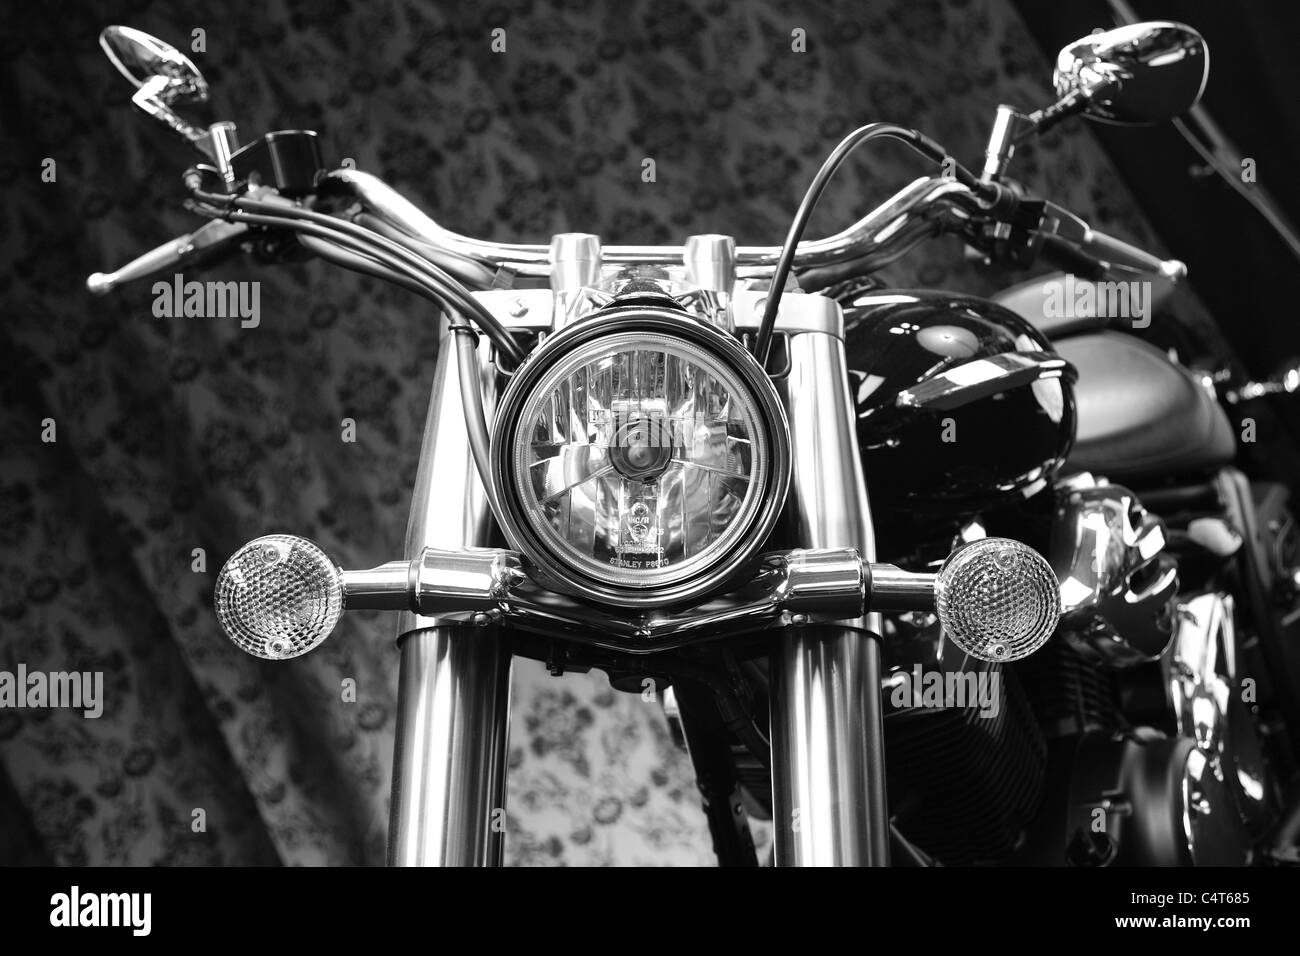 Triumph moto de route en noir et blanc Banque D'Images